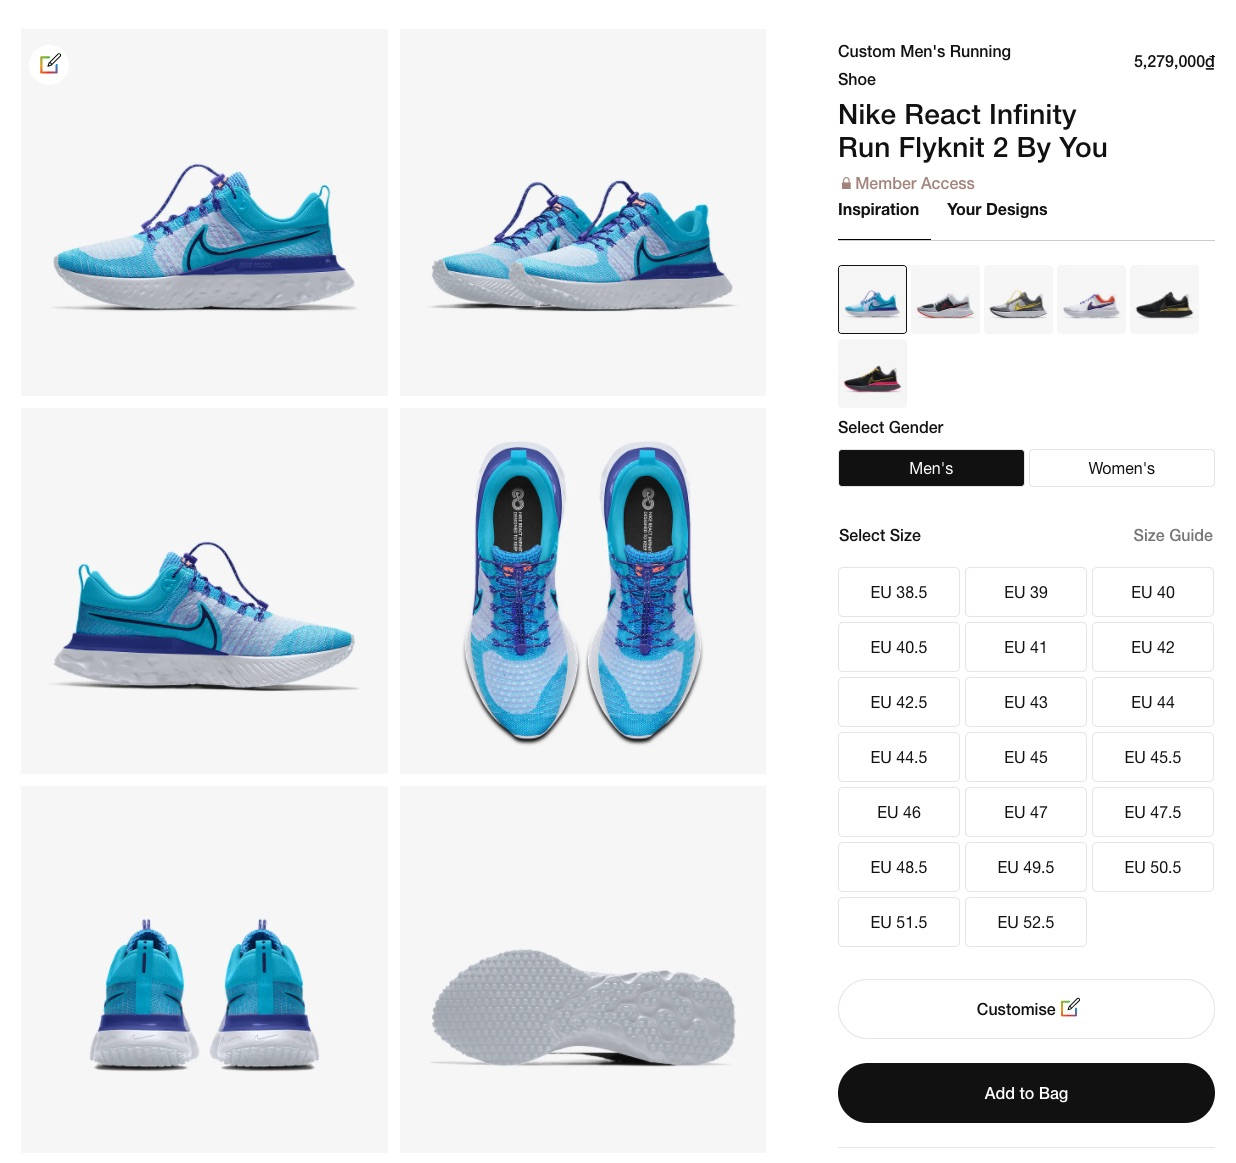 Hướng dẫn đặt mua giày Nike By You - Tuỳ biến giày phong cách riêng của bạn - nike by you running shoes 2